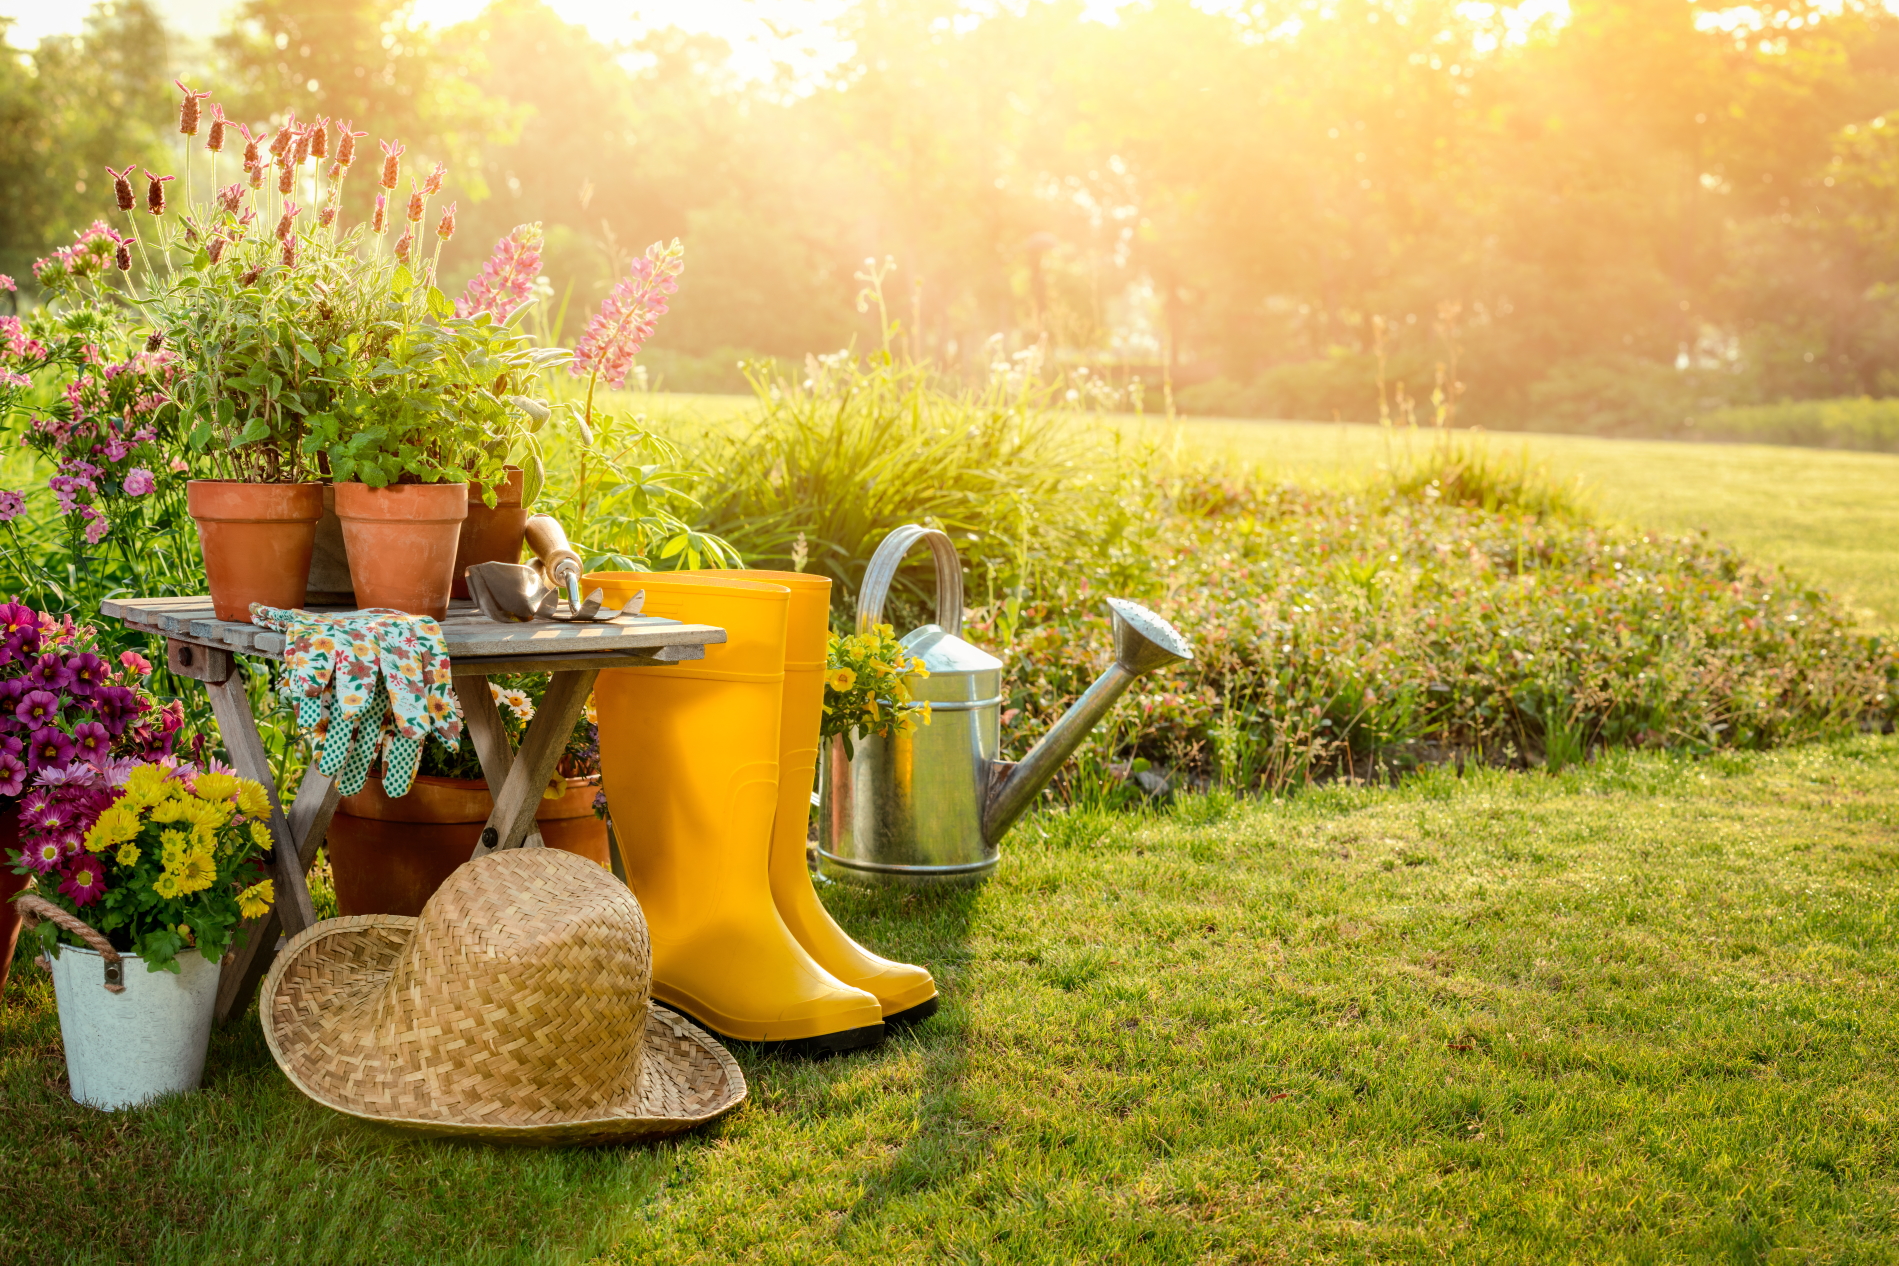 ¿Qué beneficios saludables te puede ofrecer la jardinería?